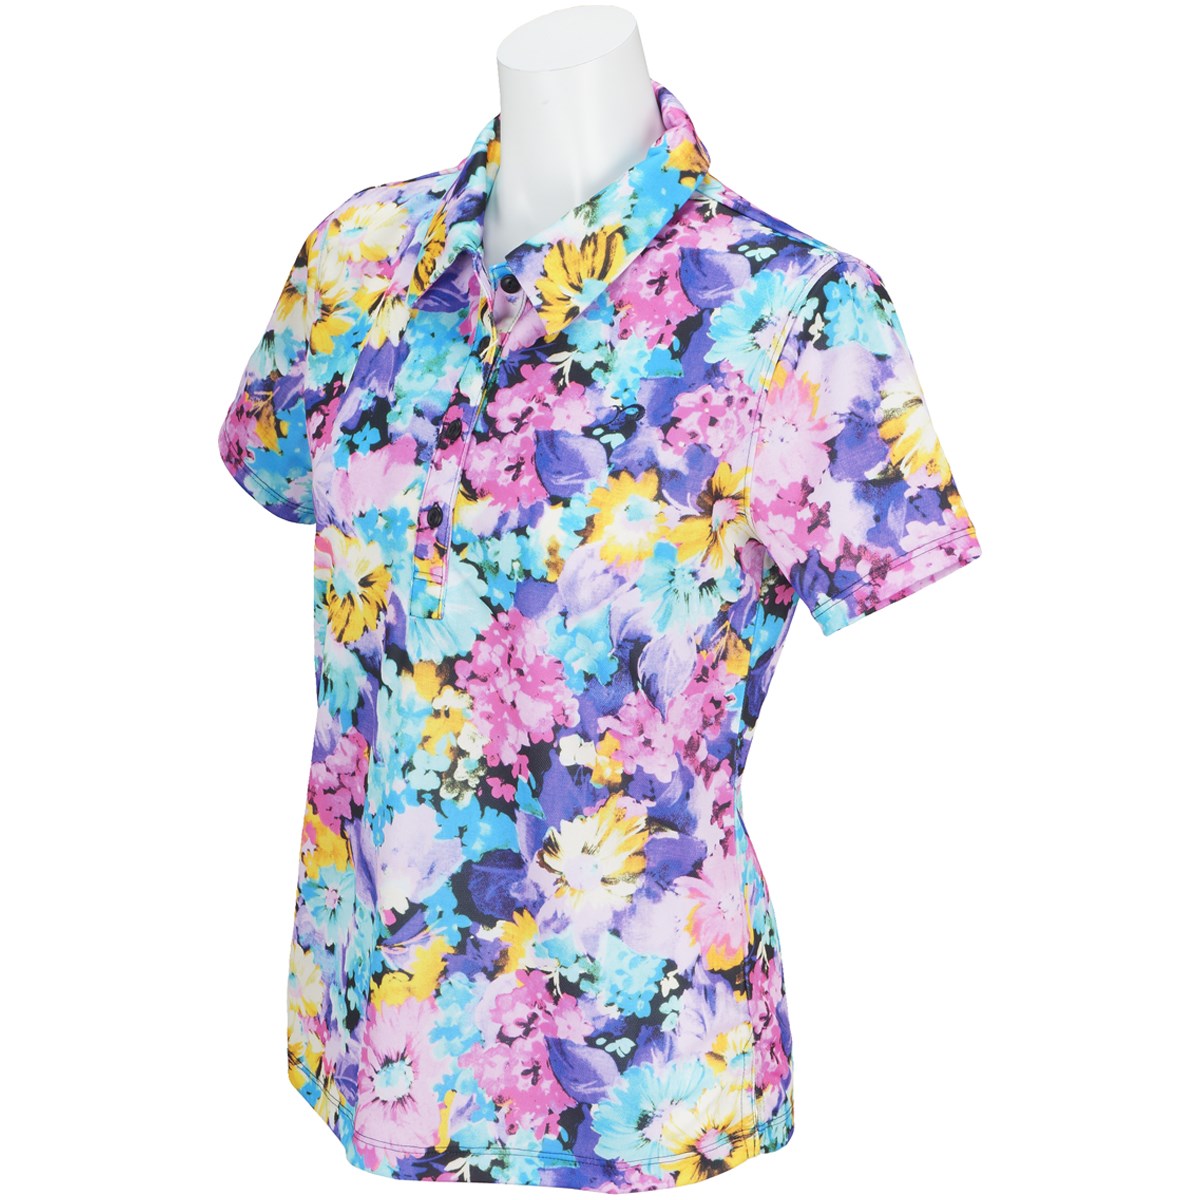  [2018年春夏モデル] リエンダ SUMMER1プリント半袖ポロシャツ ゴルフウェア